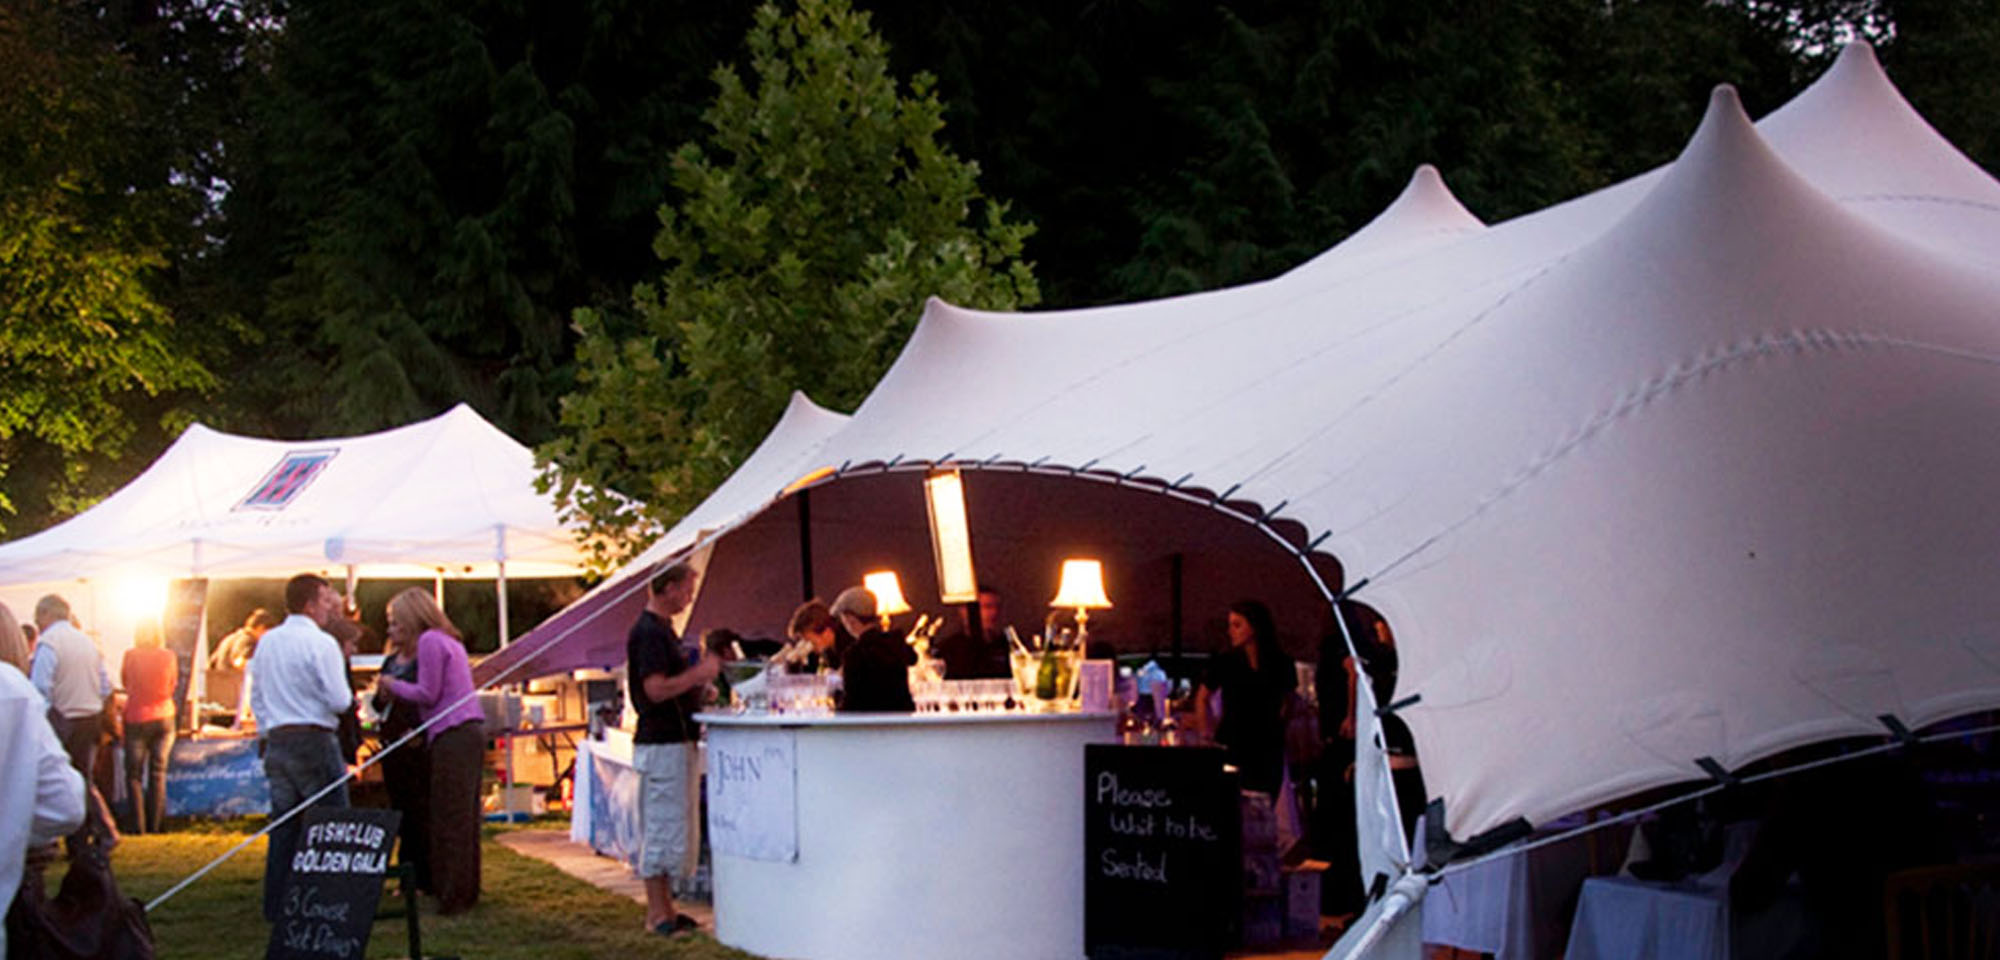 Beige Strech tent, pop up restaurant, lit up, dusk.